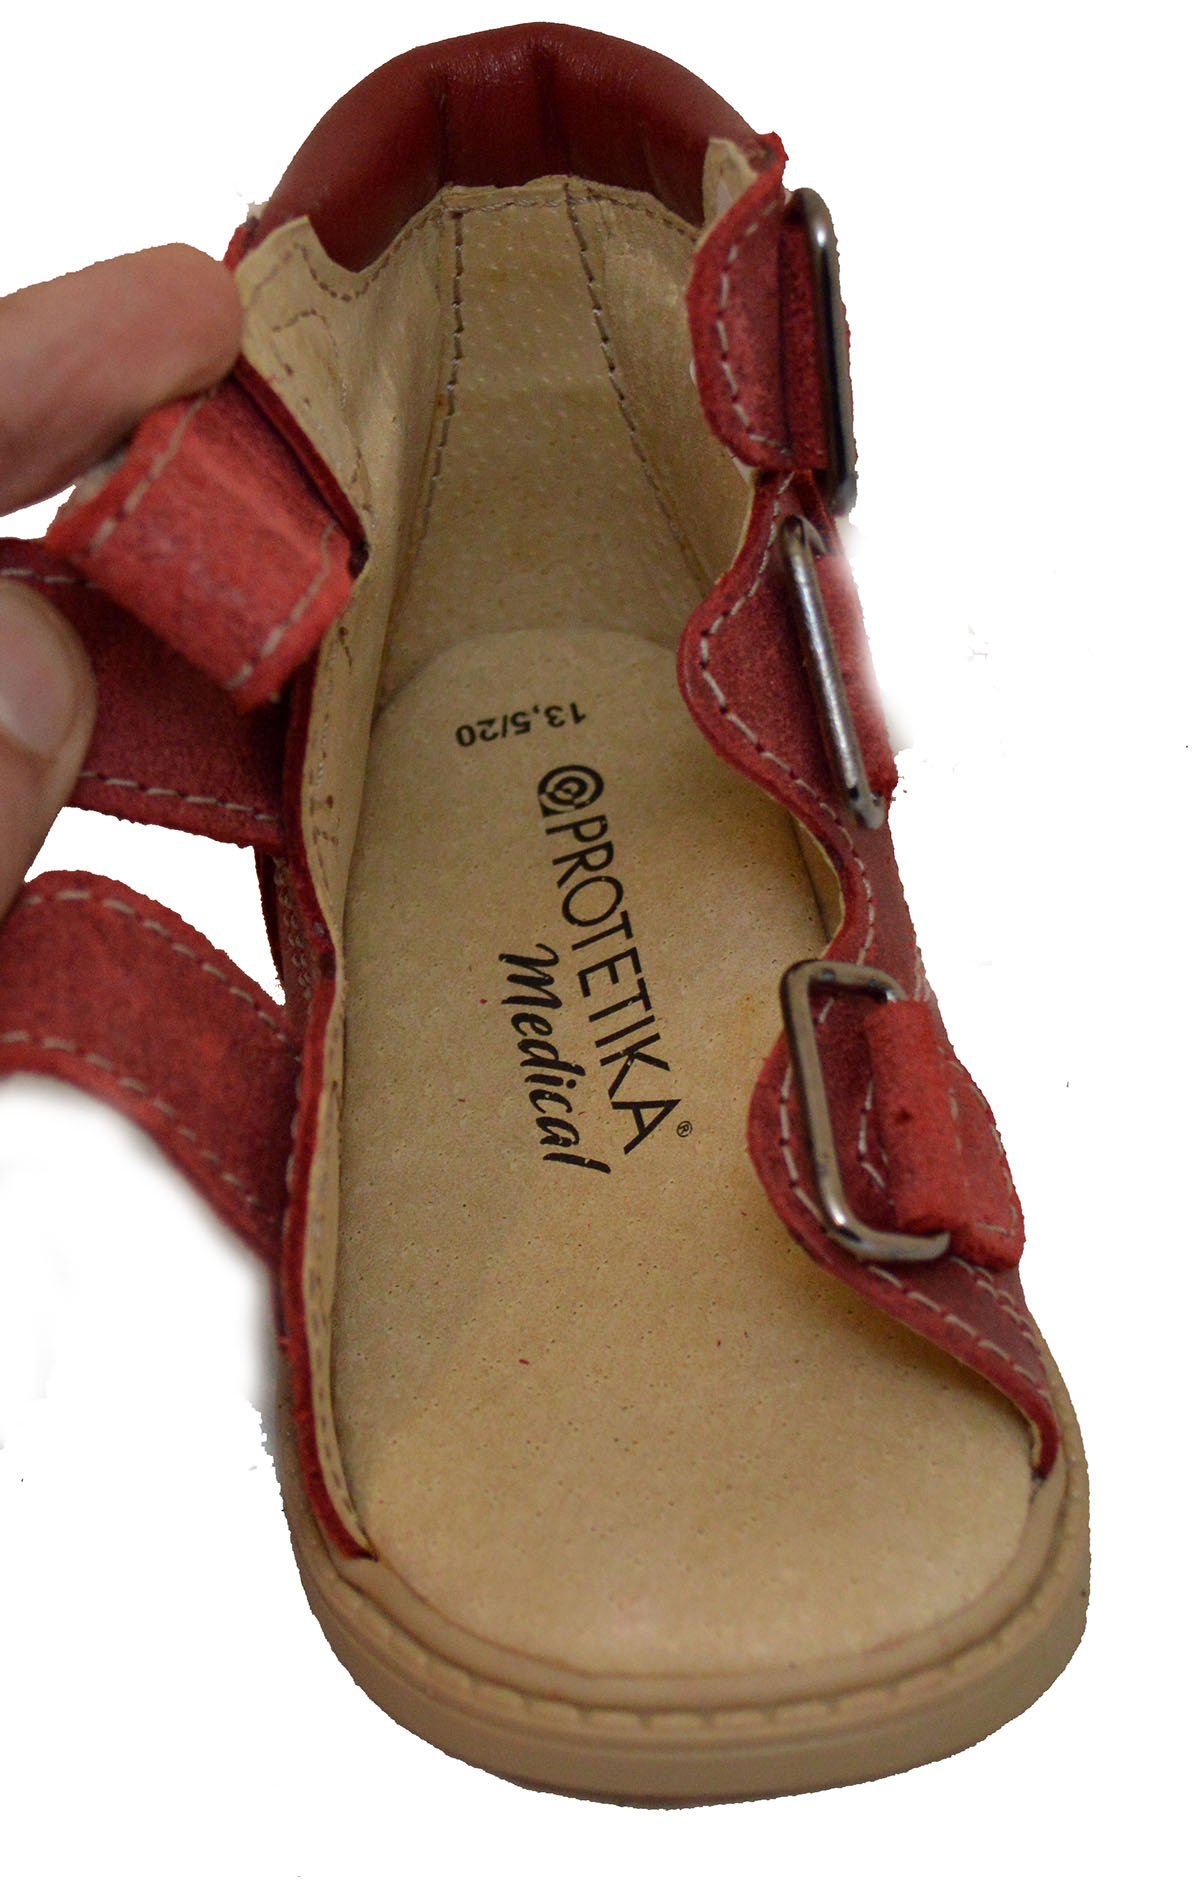 Анатомическая обувь купить. Мокасины Anatomic Footwear Arium Comfort. Протетика 513. Ортопедический. Анатомическая обувь для детей.